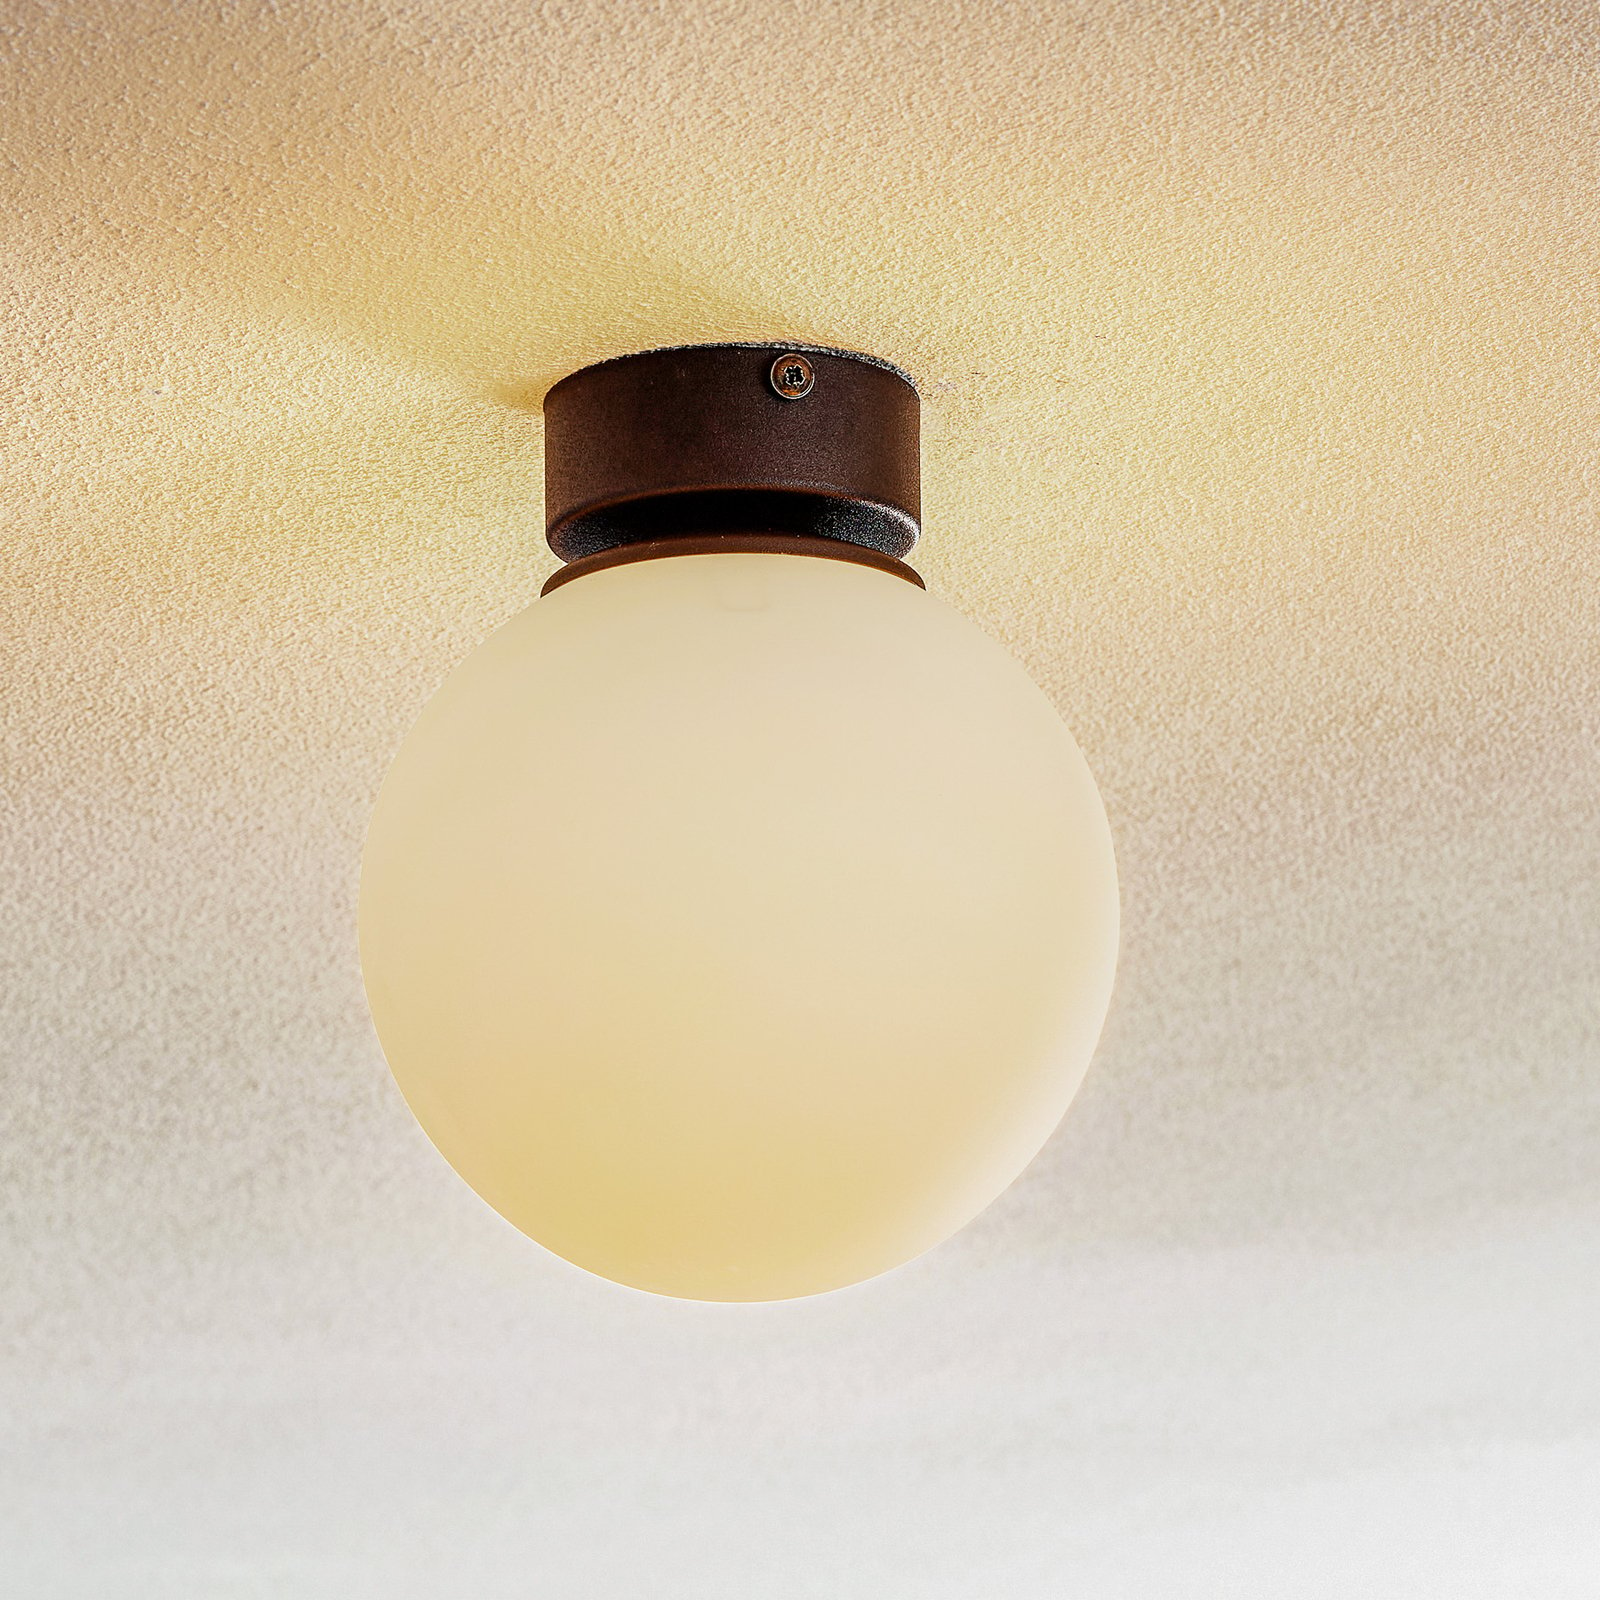 Celeste ceiling, spherical glass lampshade, 1-bulb